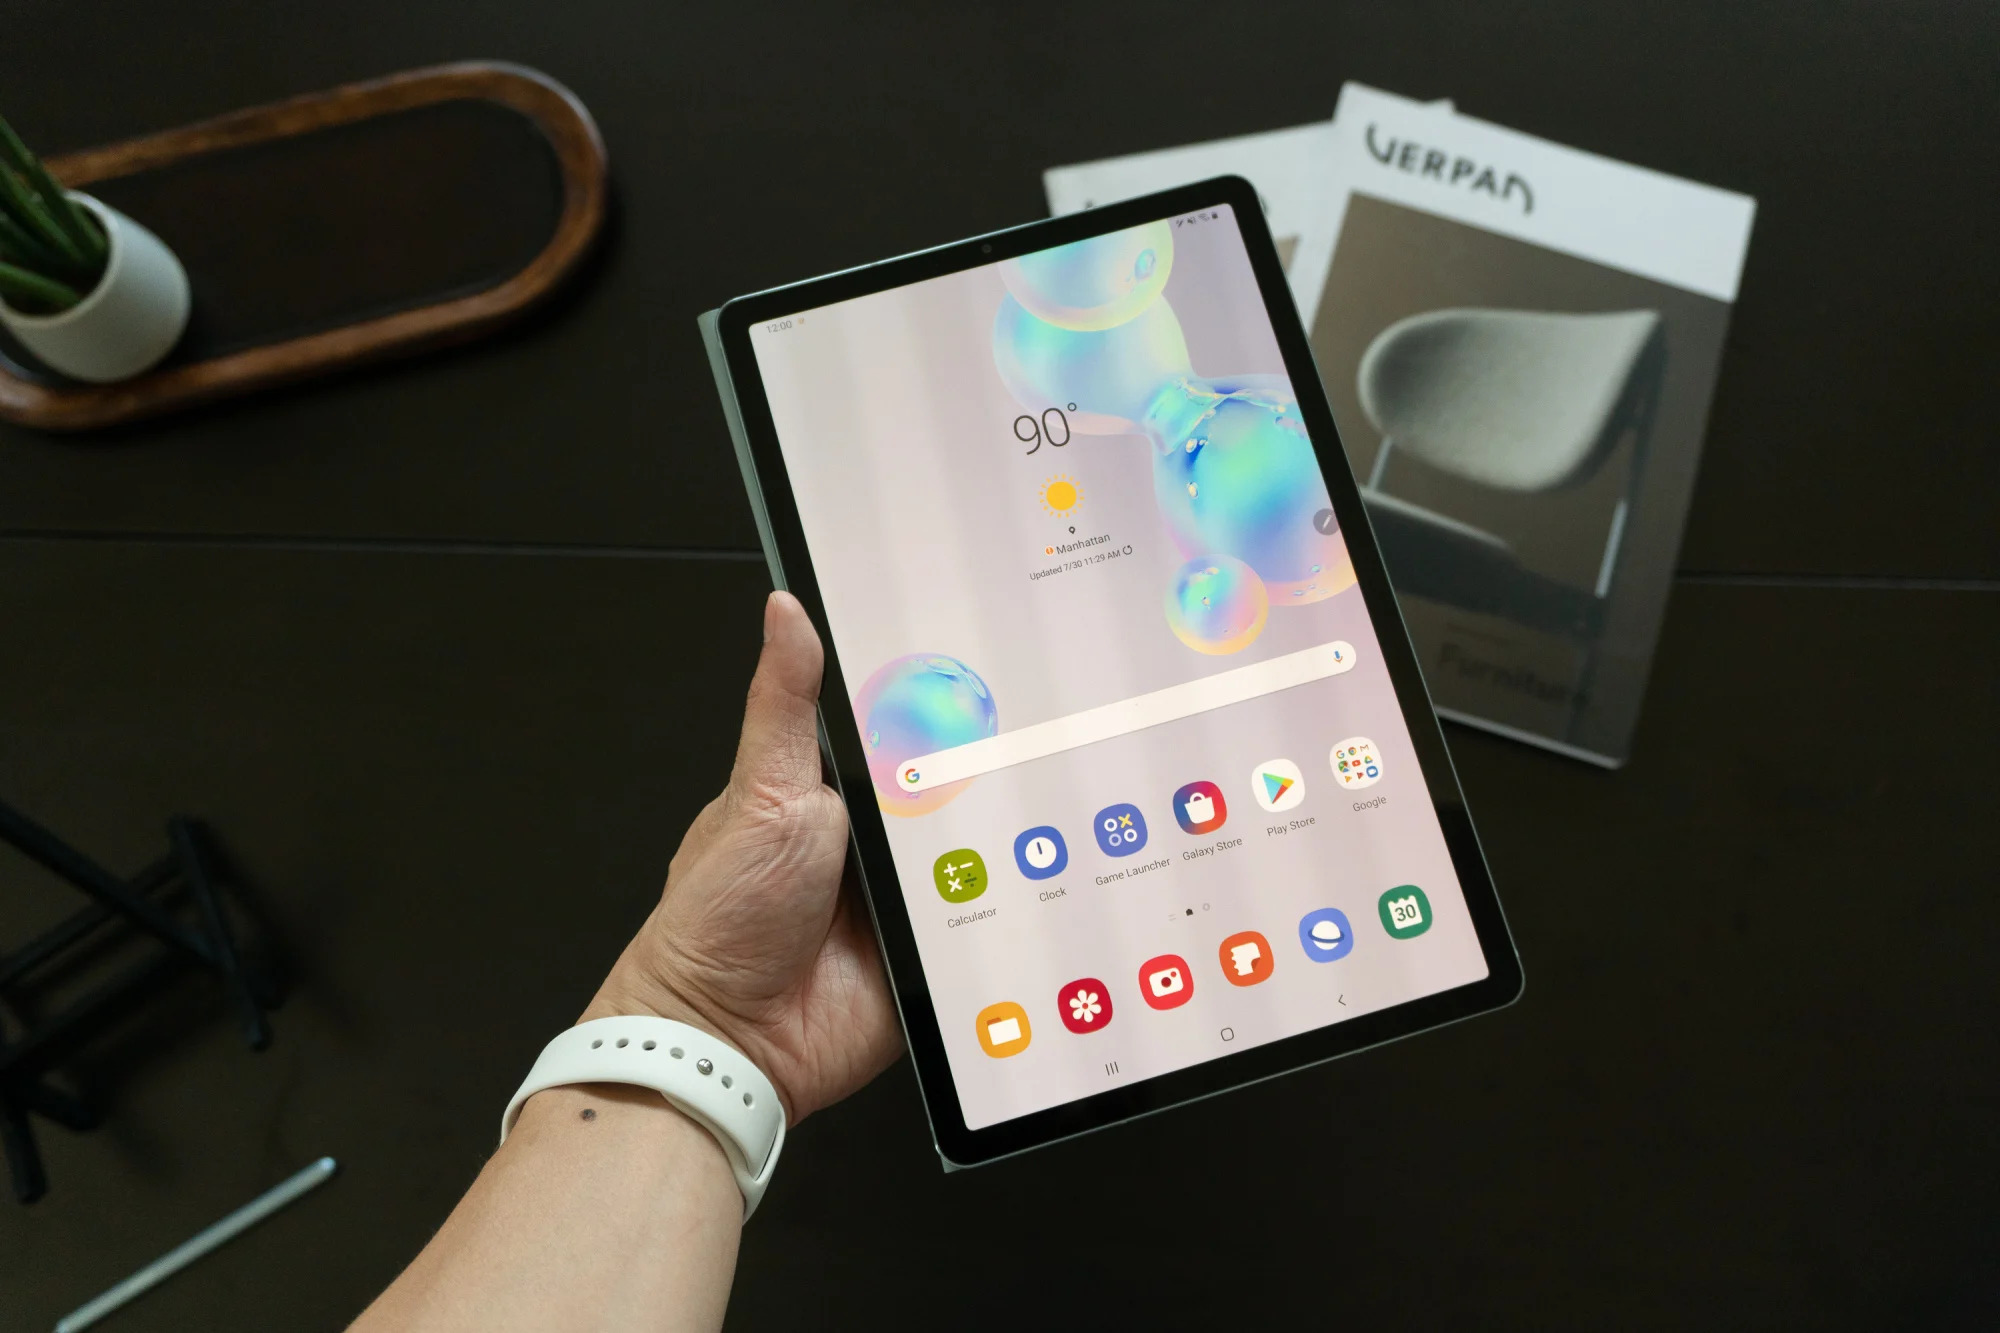 How Do You Create A New Folder On Samsung Tablet?